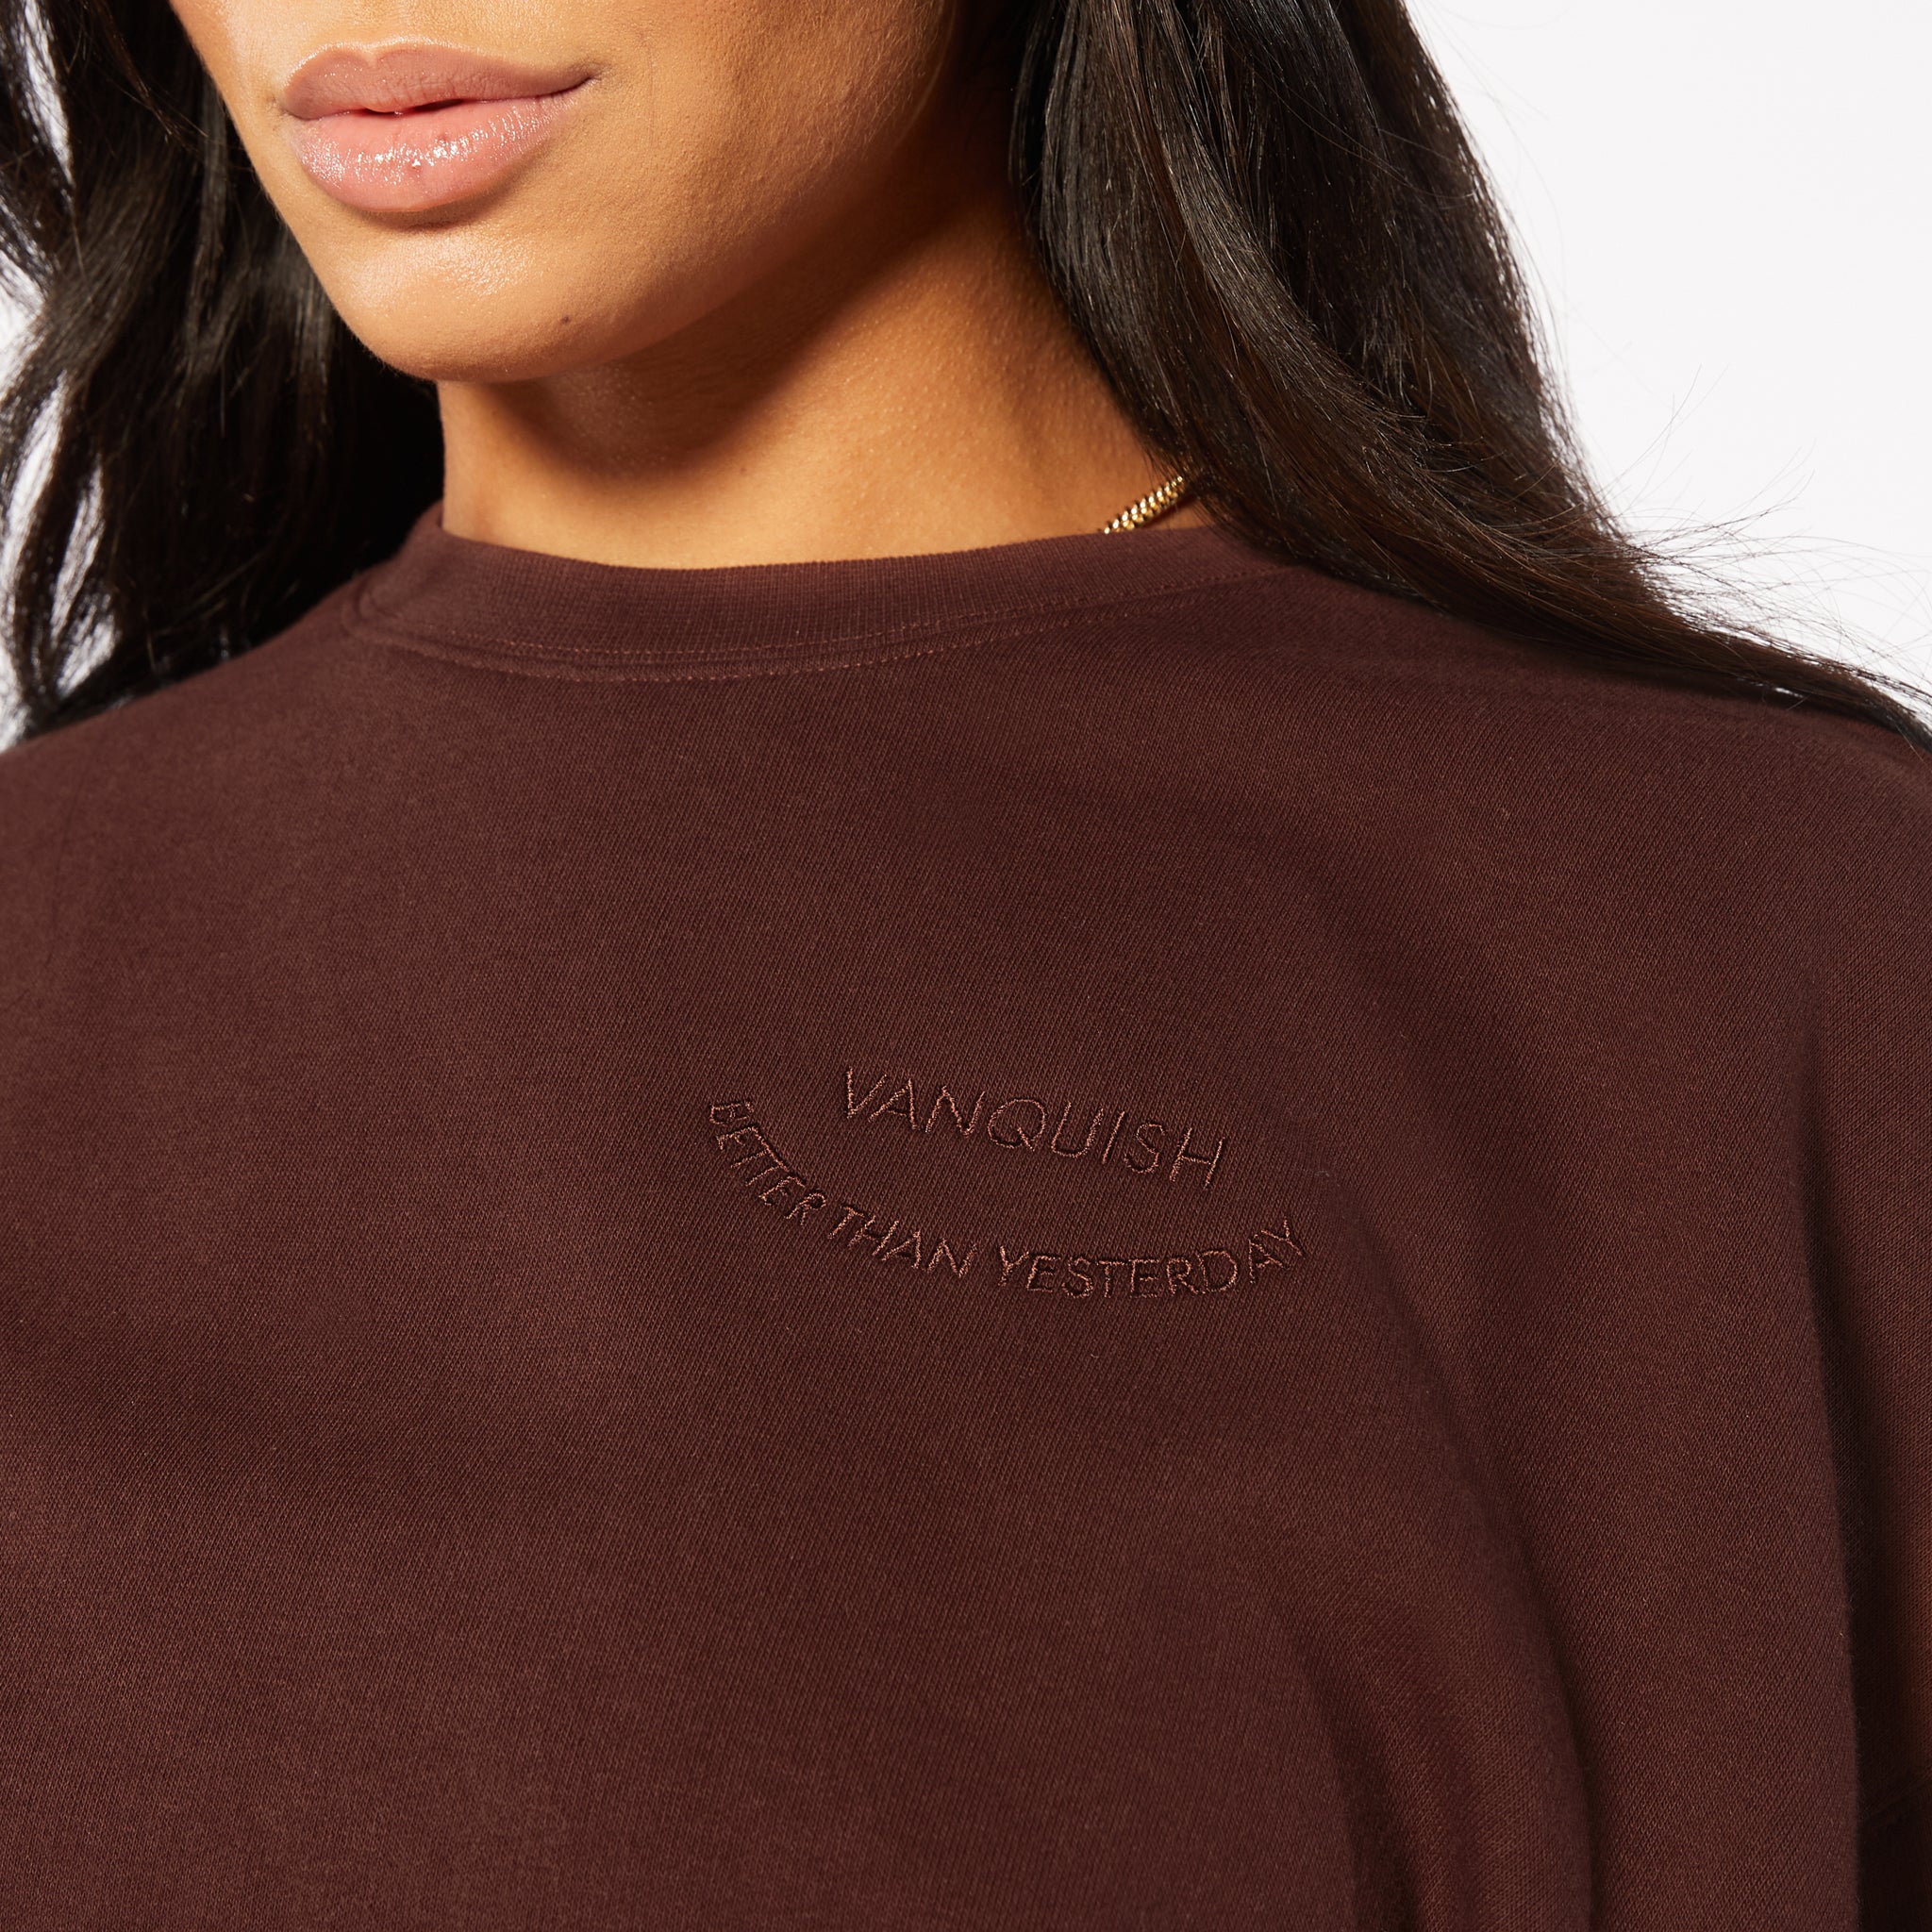 Vanquish Oversized Chocolate Brown Sweater